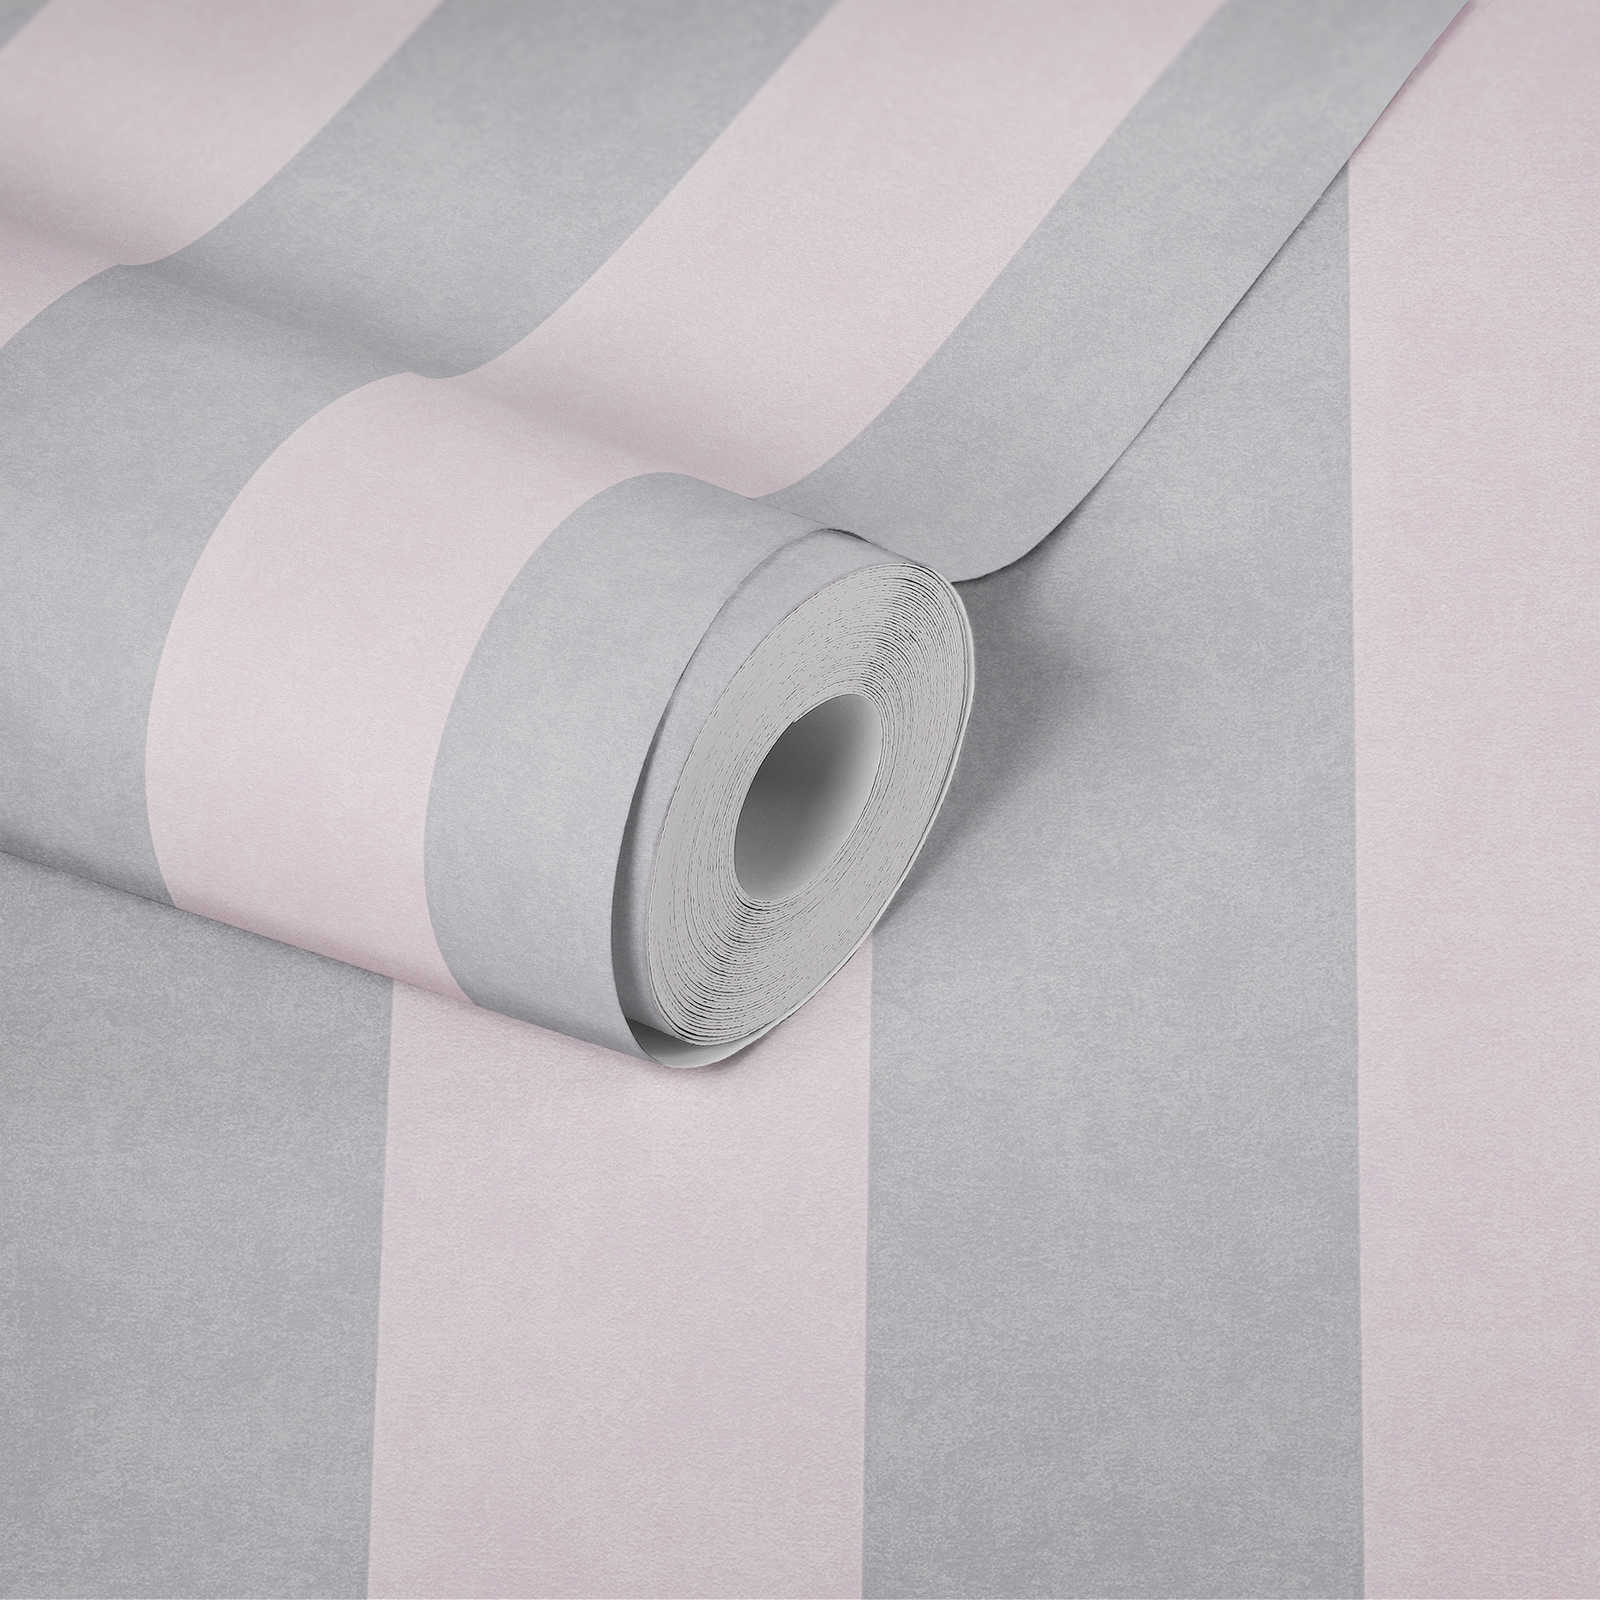             Papier peint rayé avec motif texturé - gris, rose
        